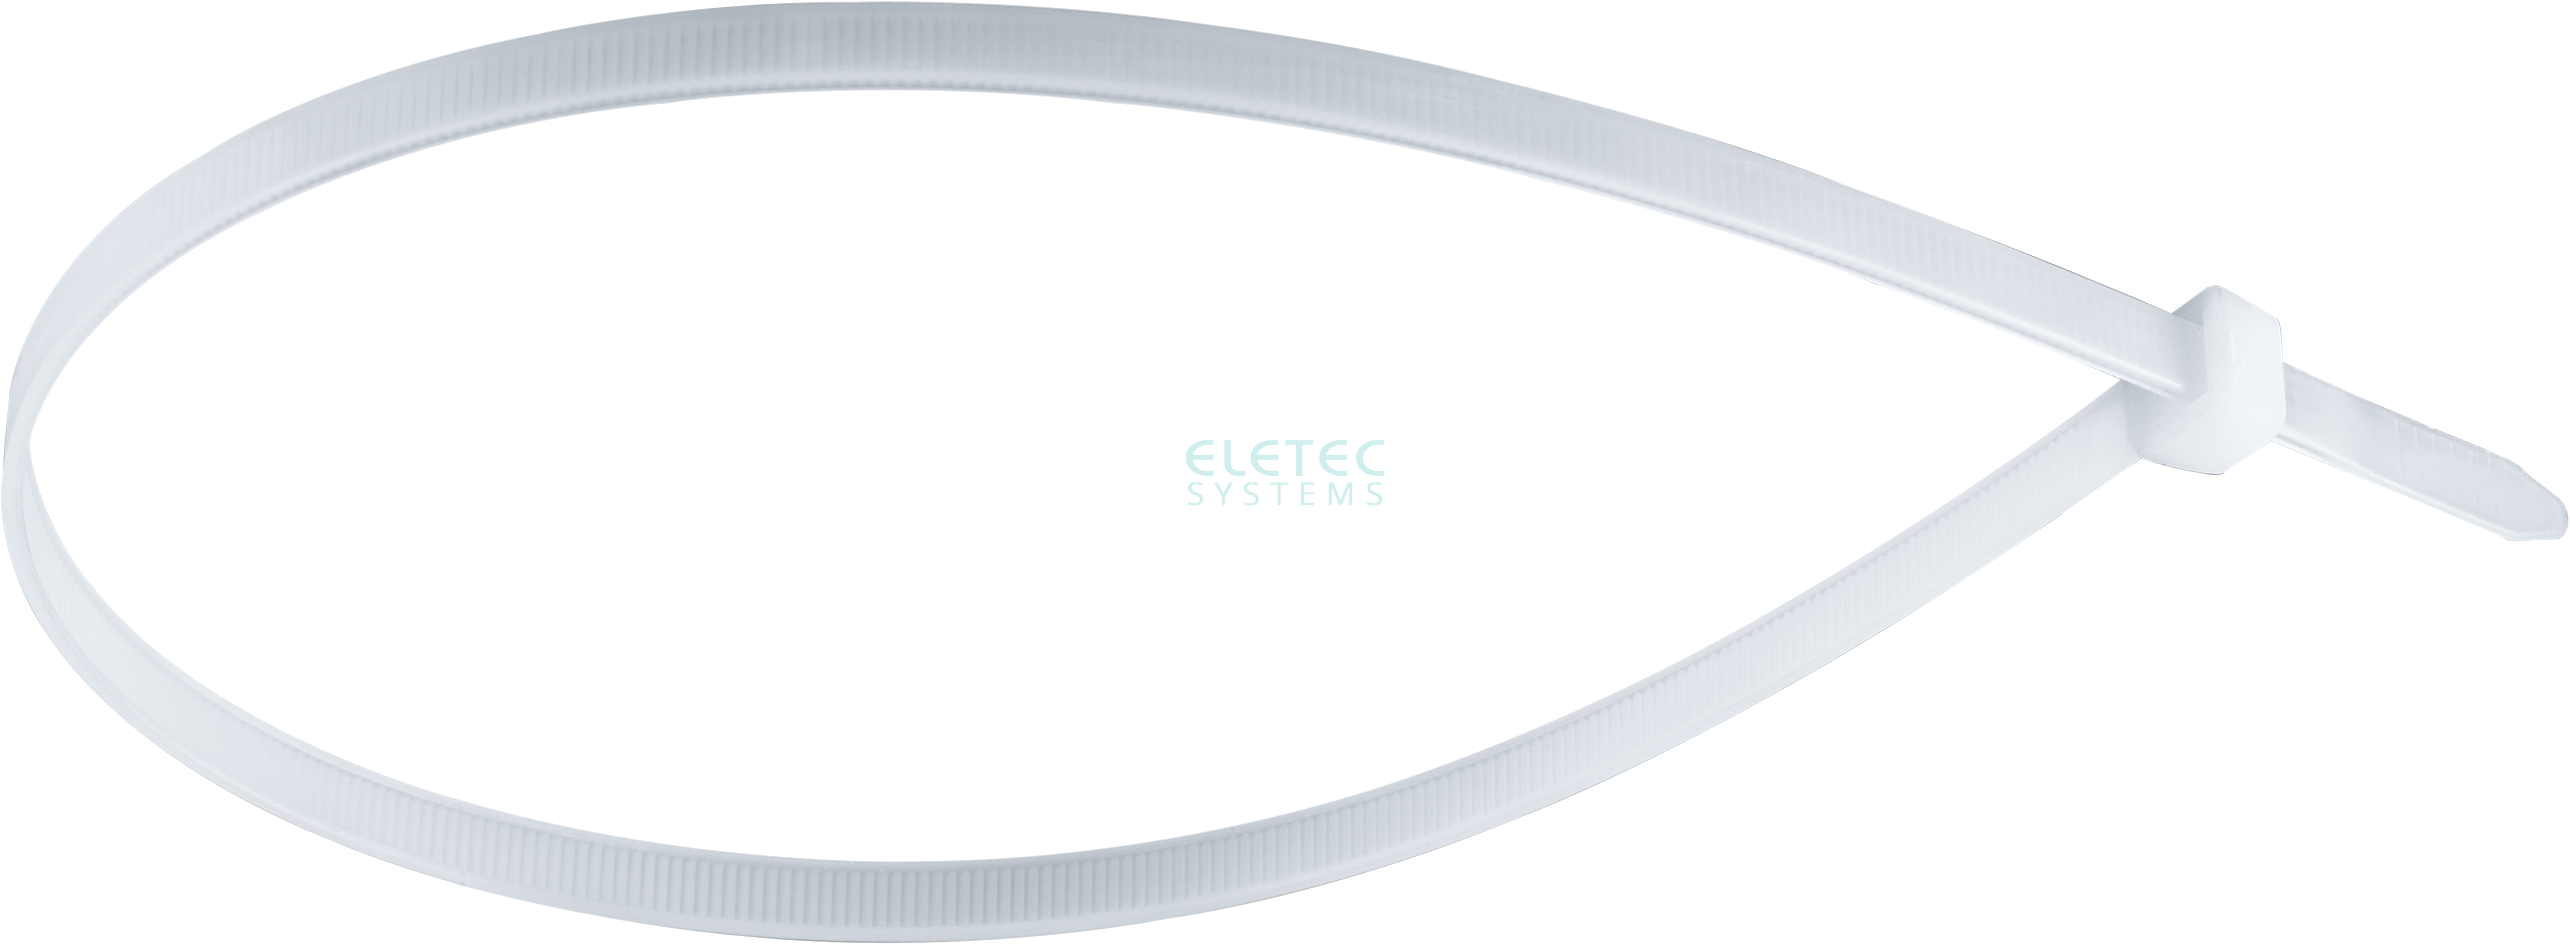 картинка Стяжка для кабеля 530х4,8 бесцветная (100 шт) Eletec Systems